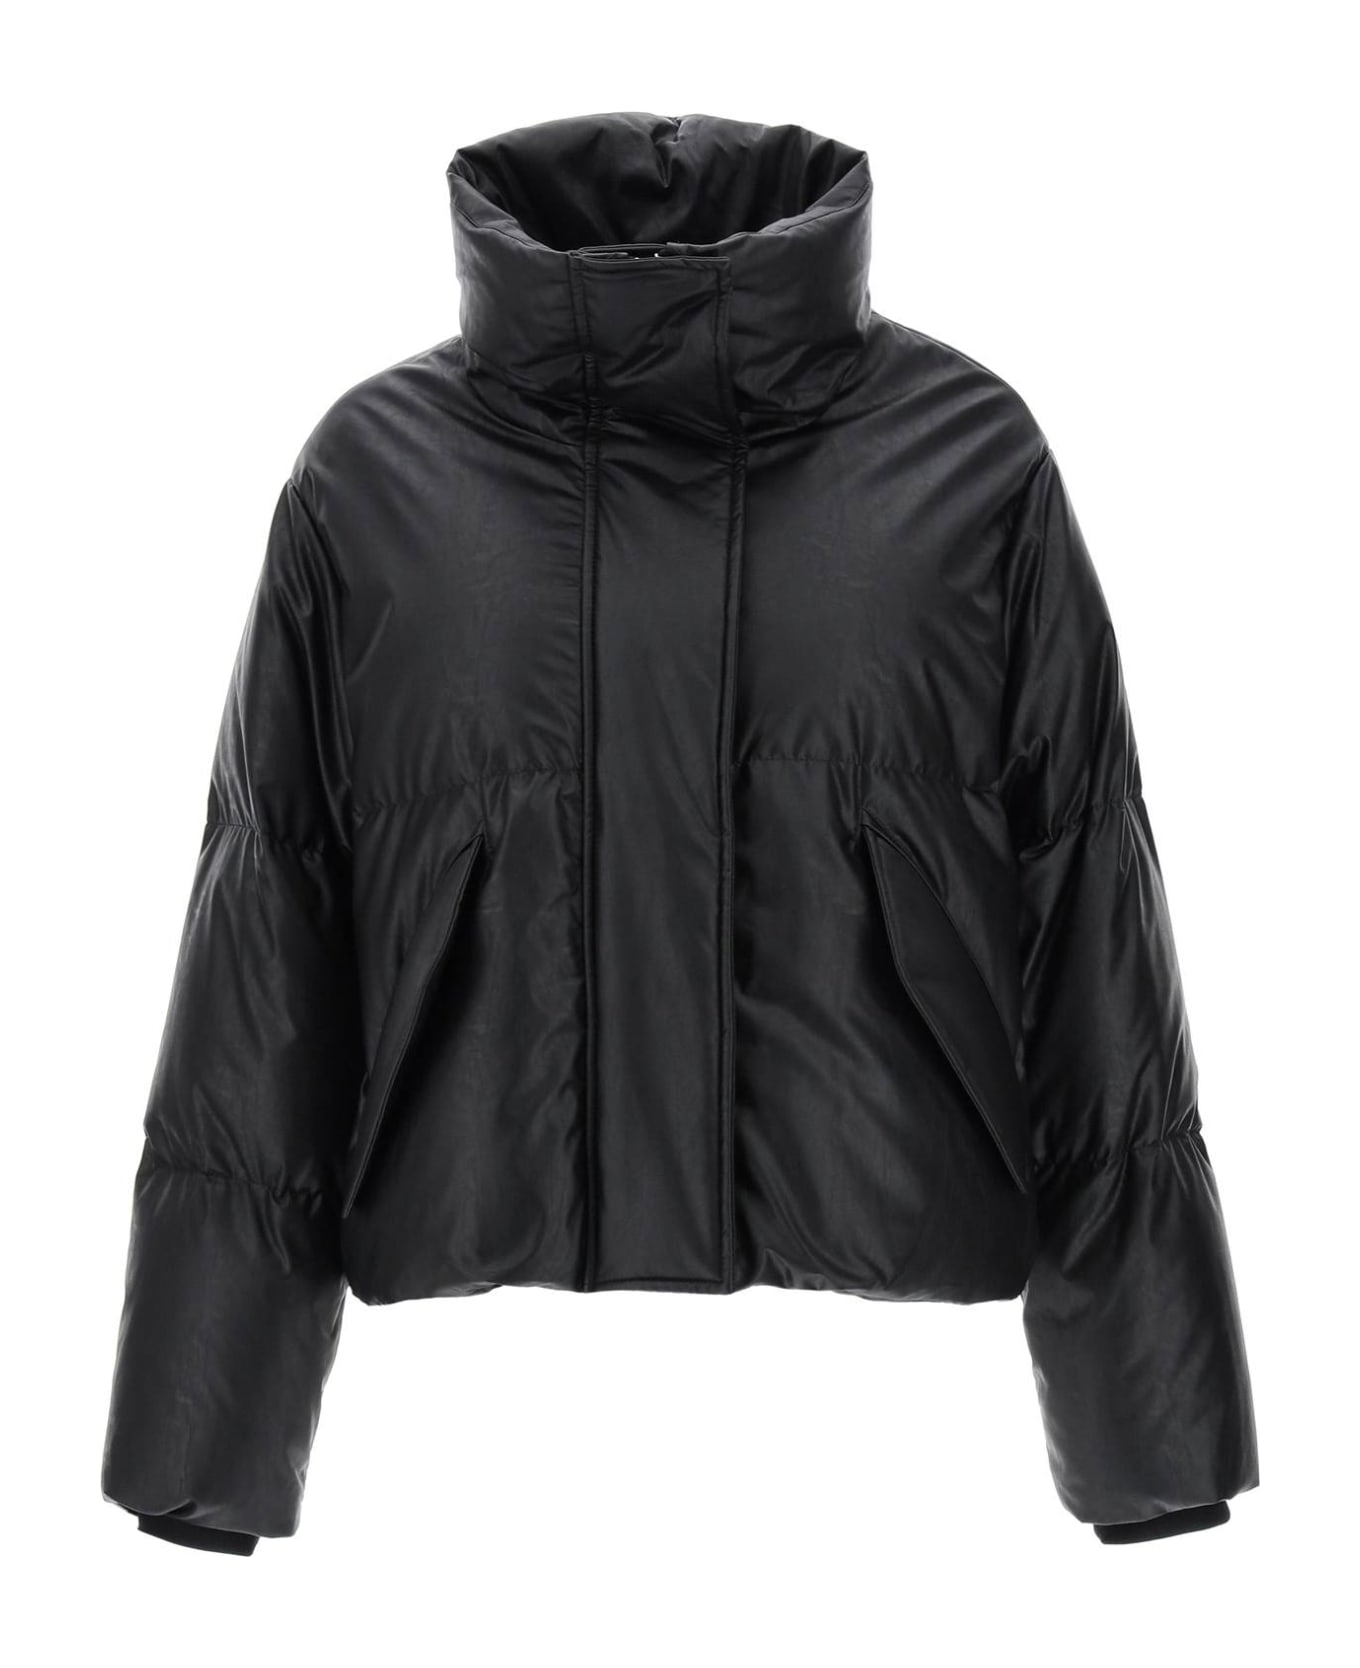 MM6 Maison Margiela Black Leather-like Jacket - 900